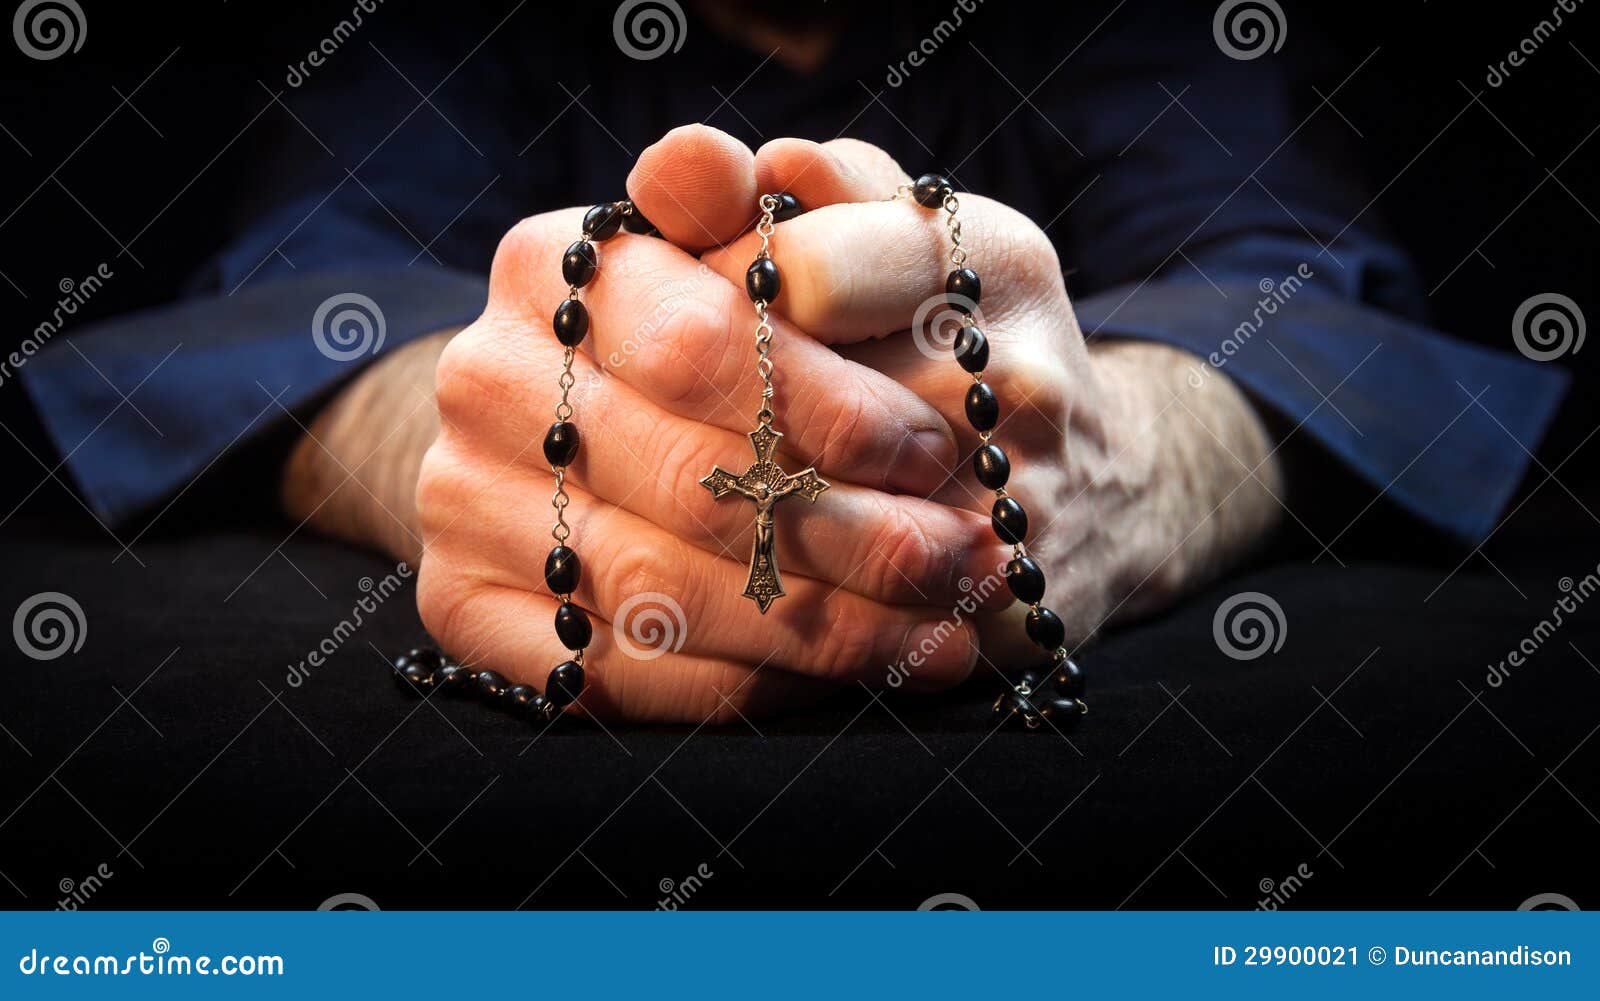 Praying Hands Stock Image - Image: 29900021